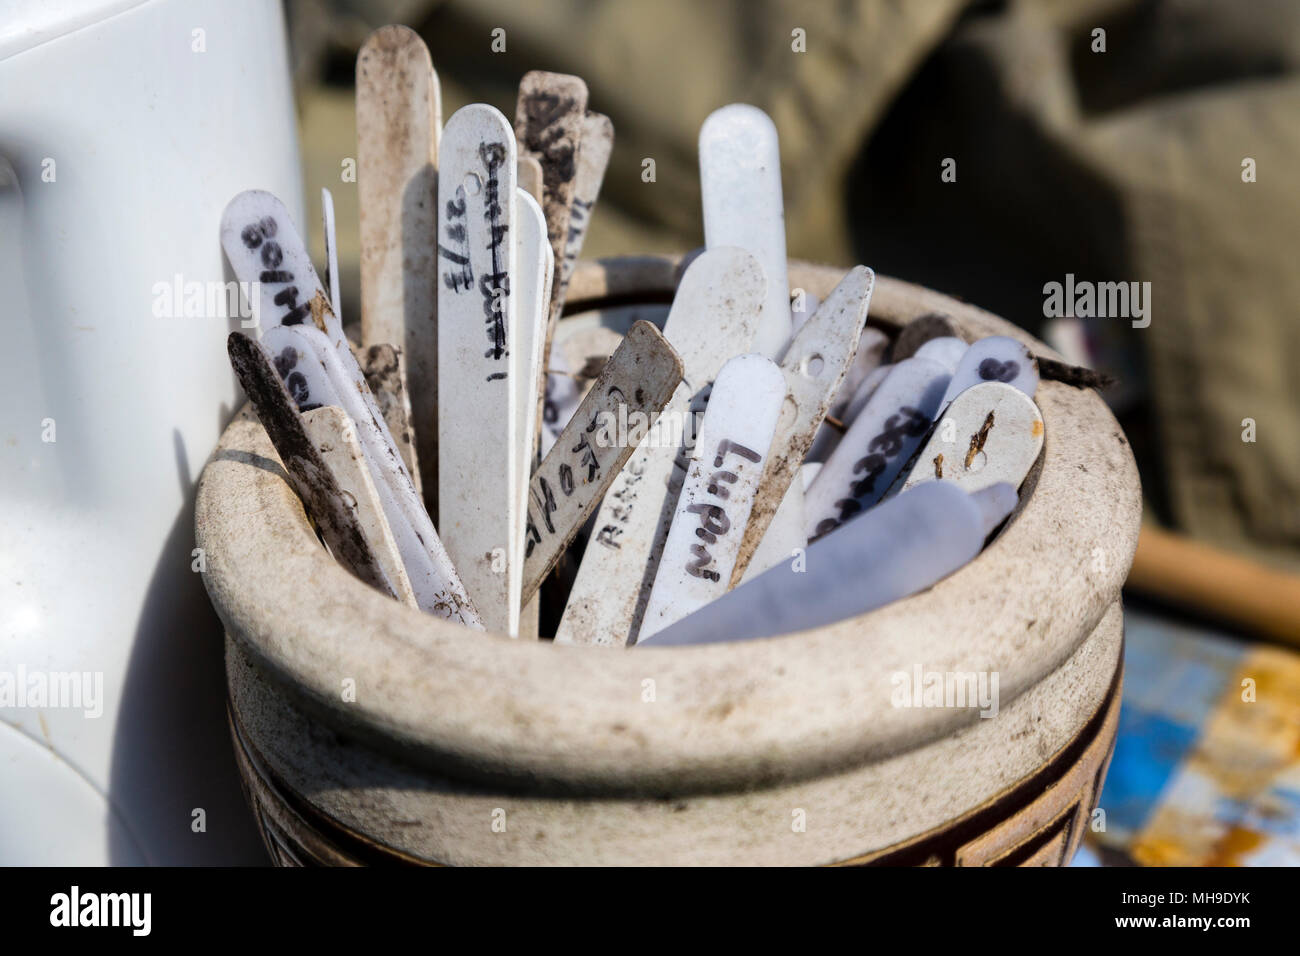 Les étiquettes des plantes et des marqueurs dans un pot en céramique Banque D'Images